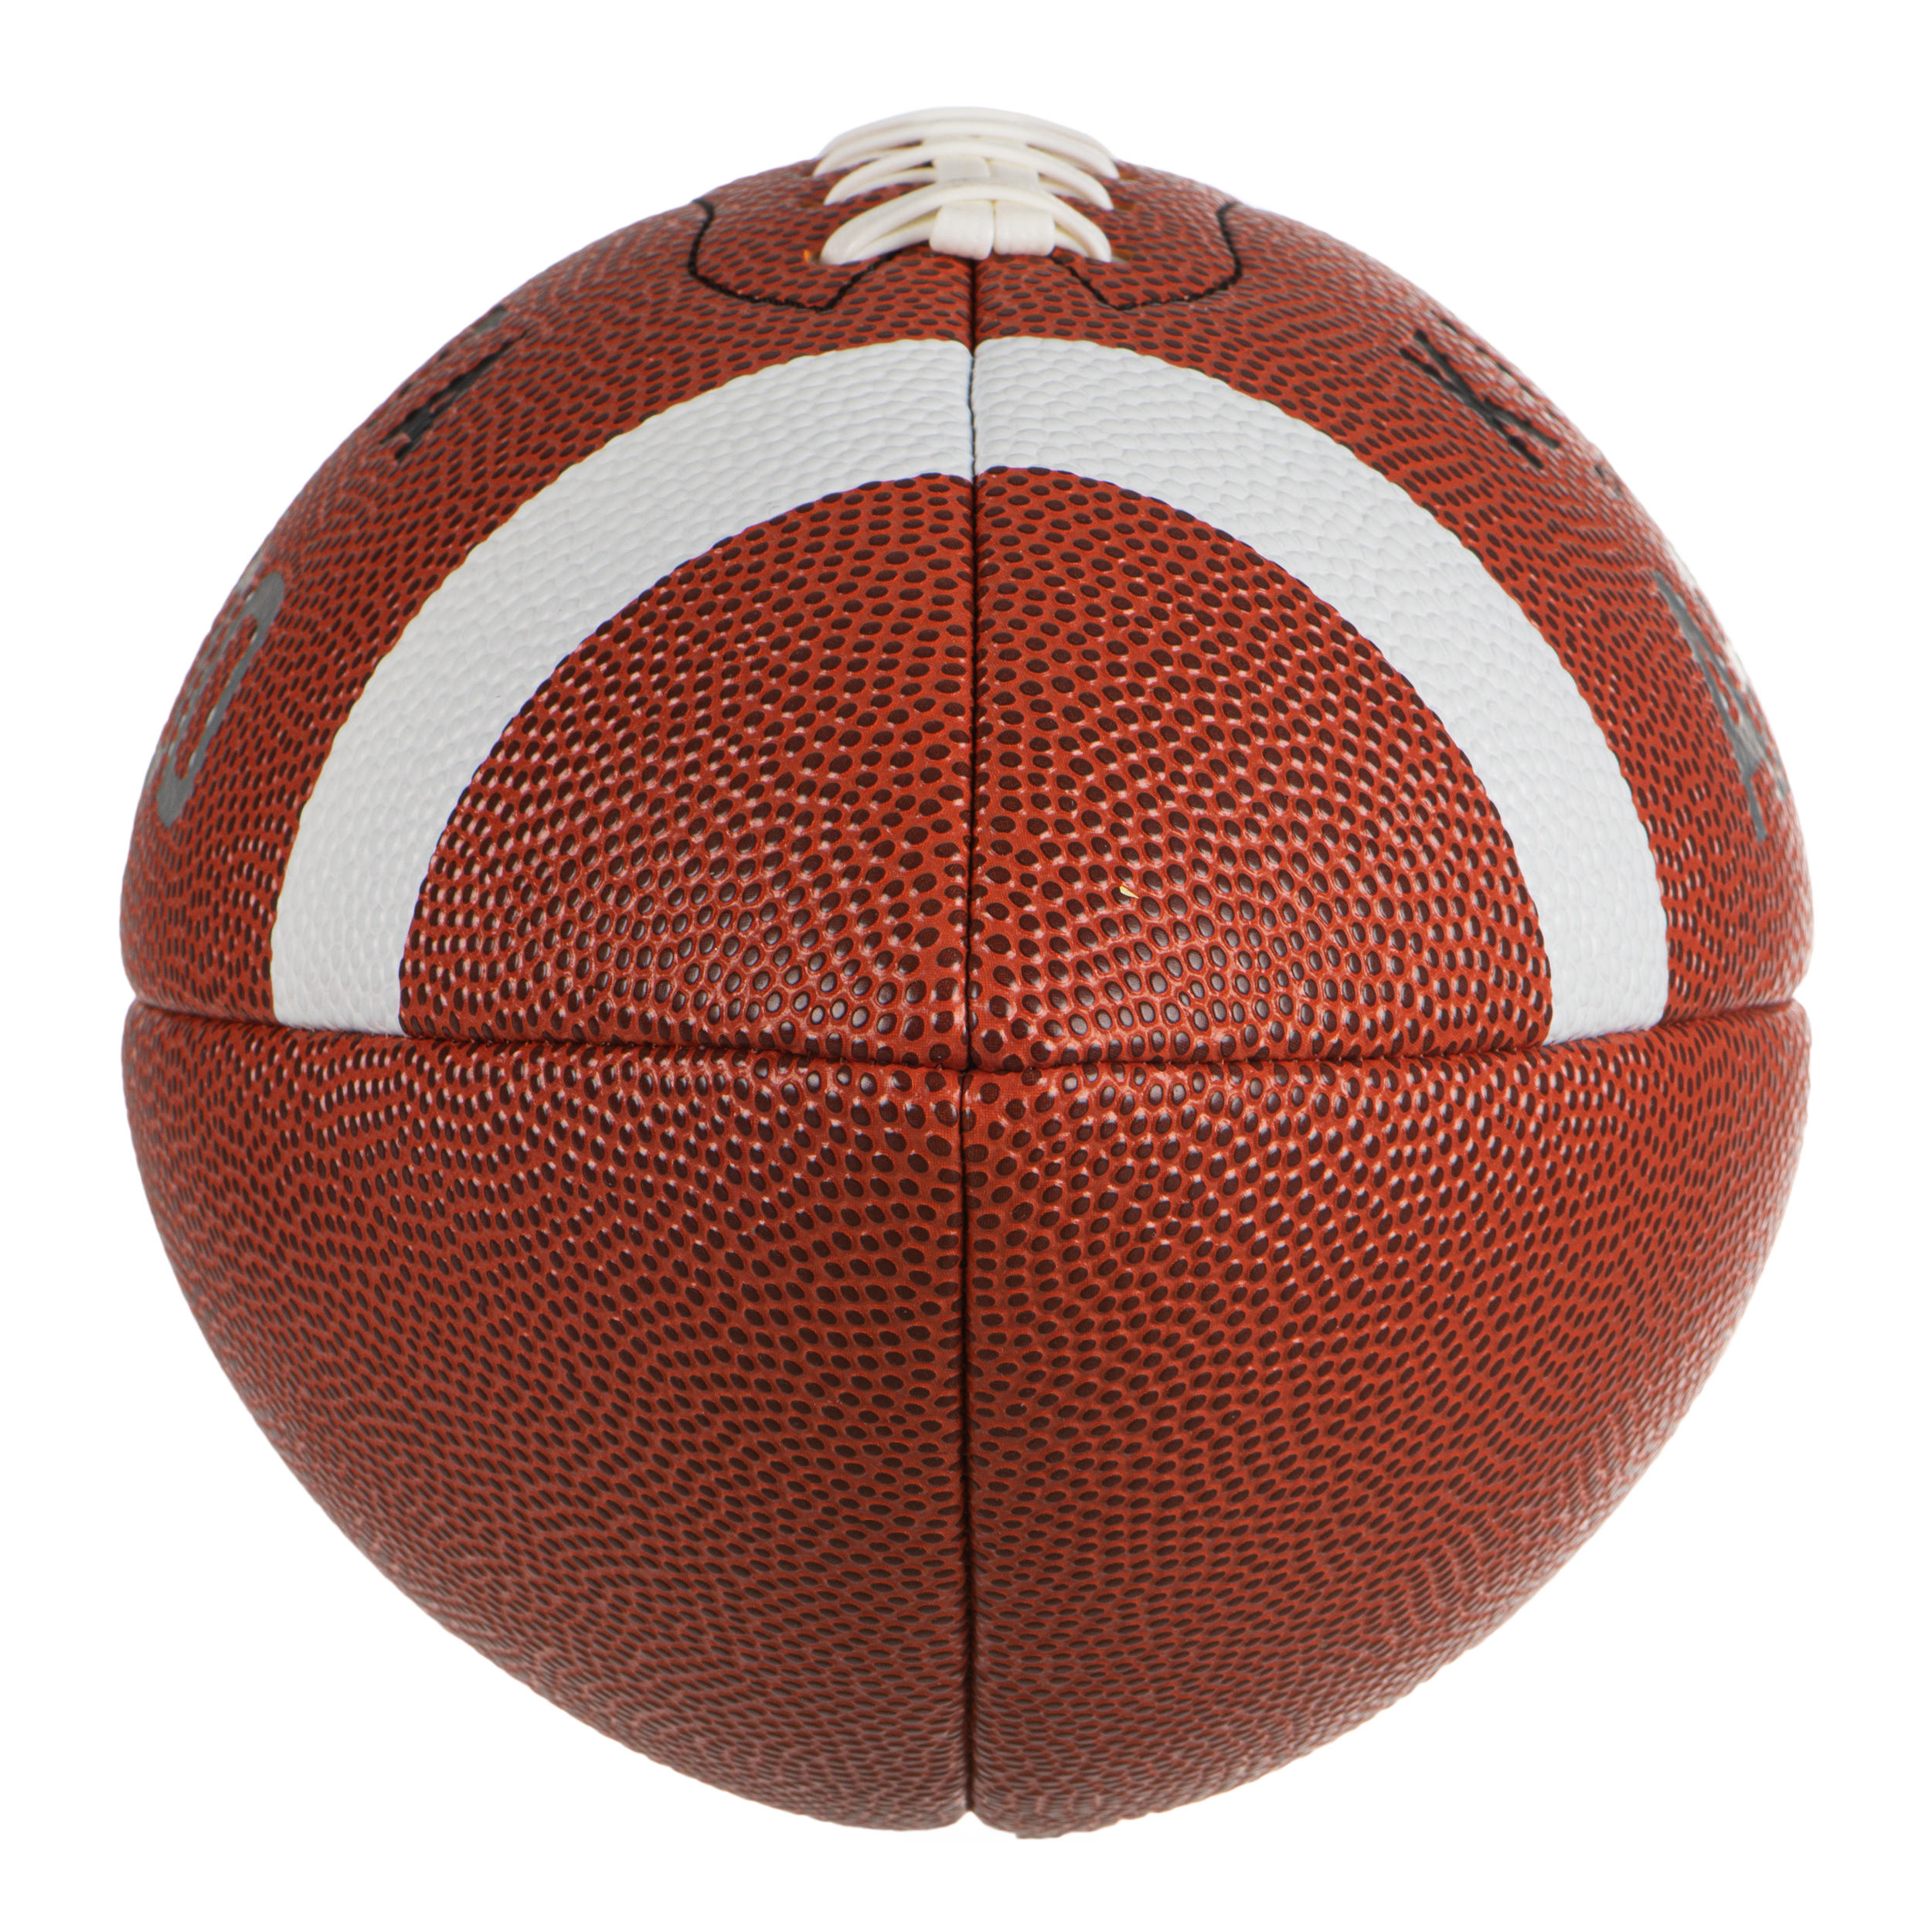 Ballon de football américain taille officielle - AF 500 BOF marron - KIPSTA